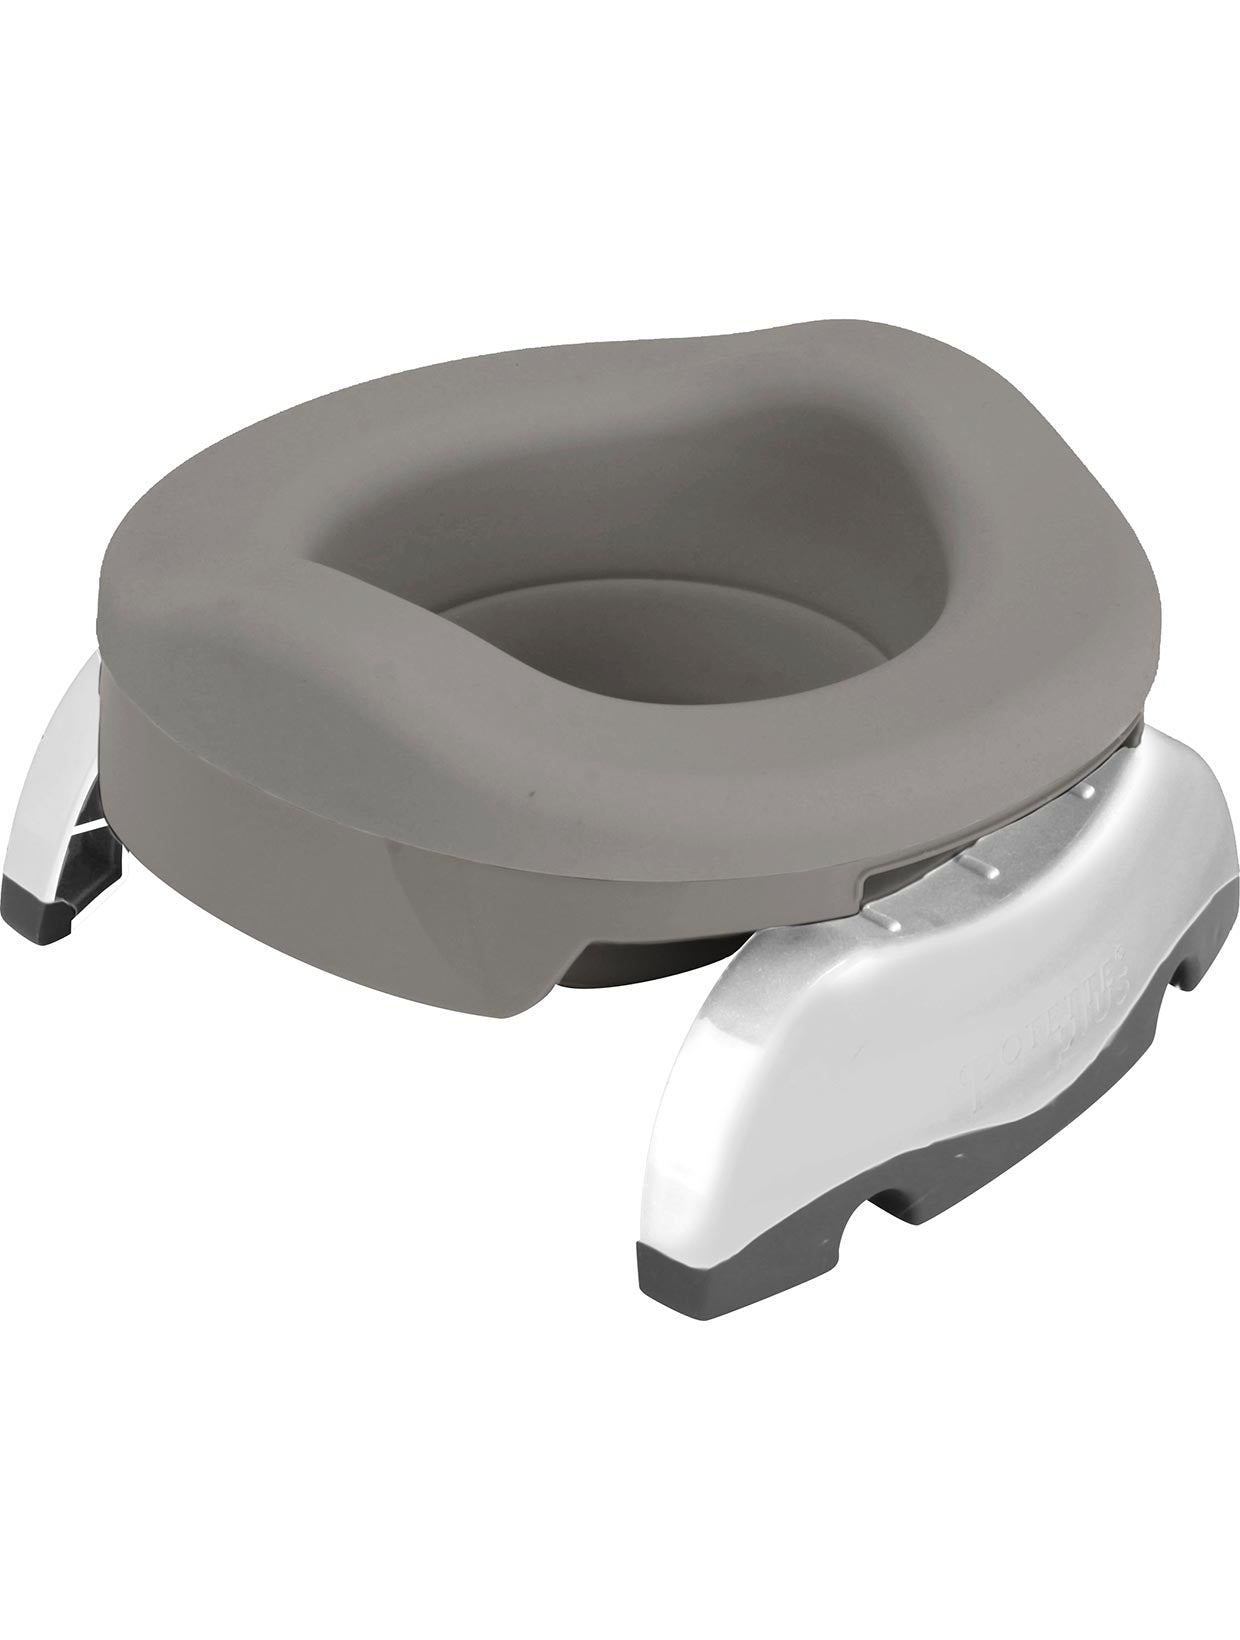 Potette Plus Portable Potty & Toilet Seat - Grey White